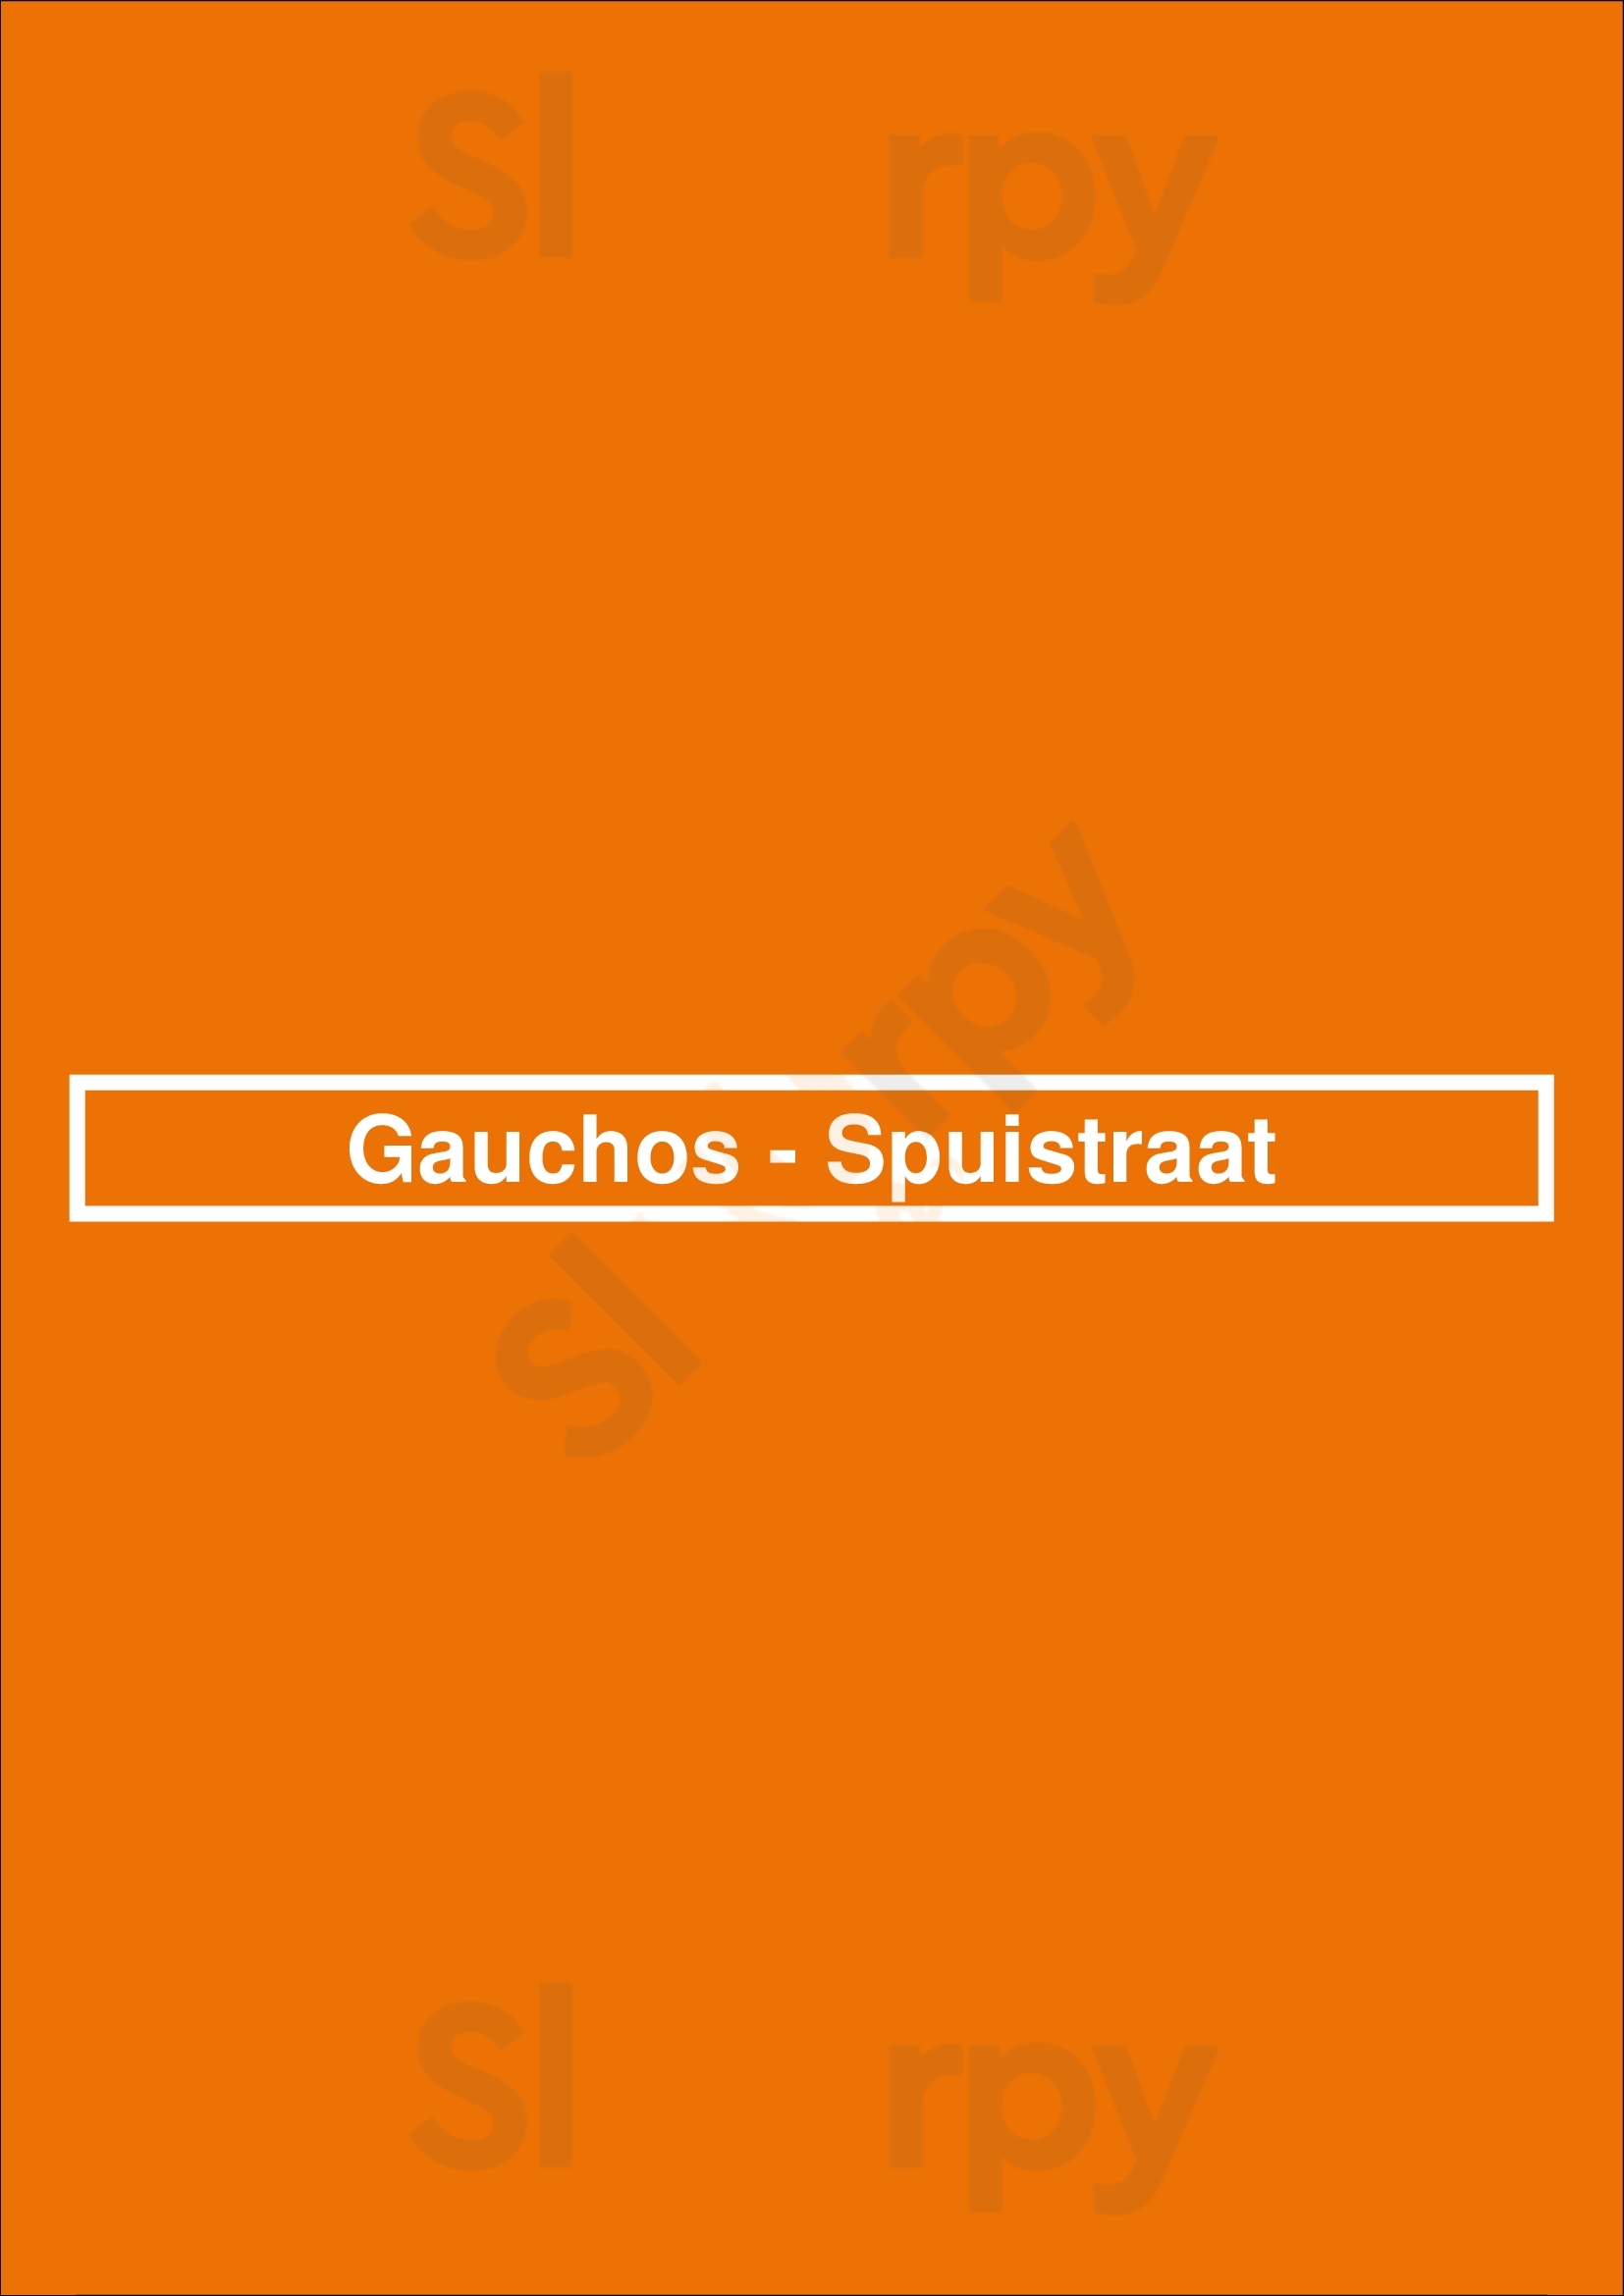 Gauchos - Spuistraat Amsterdam Menu - 1